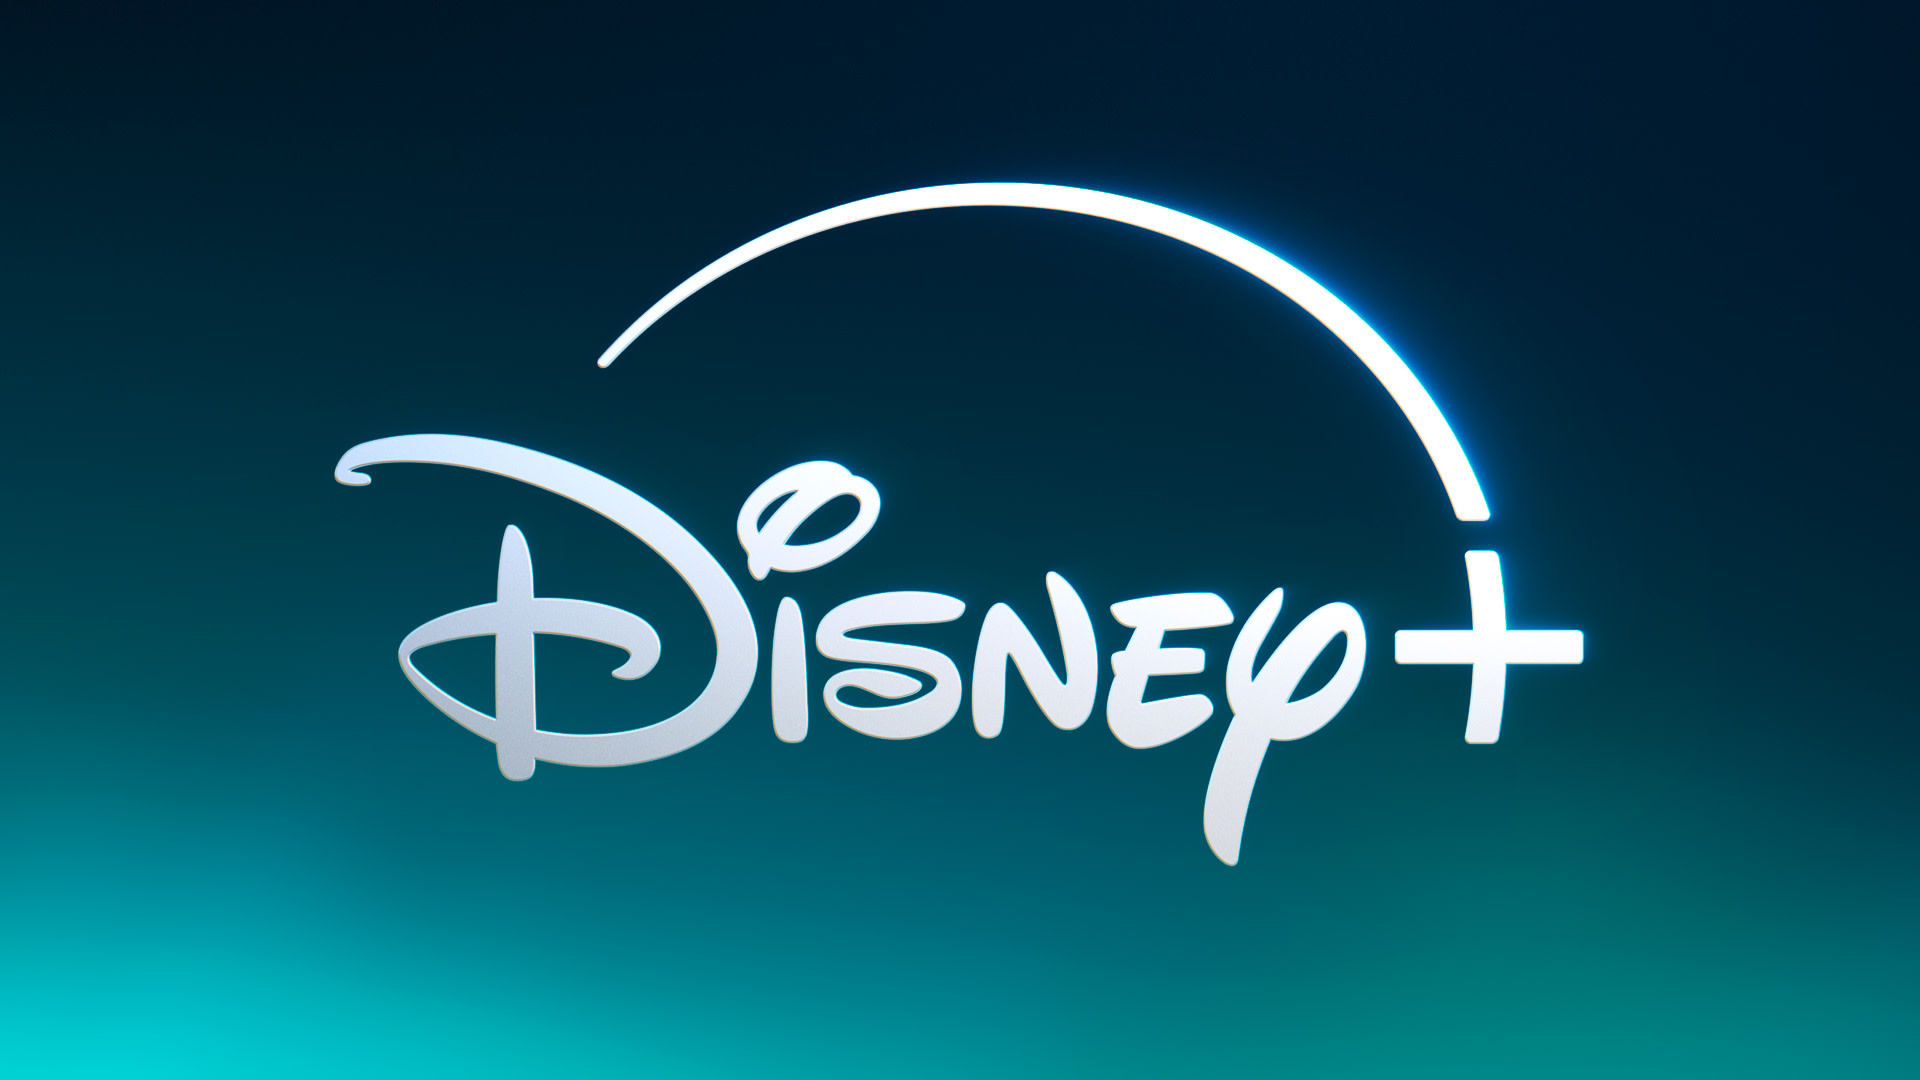 Tego nikt się nie spodziewał – na Disney+ pojawią się zaskakujące treści! Nowy kierunek?